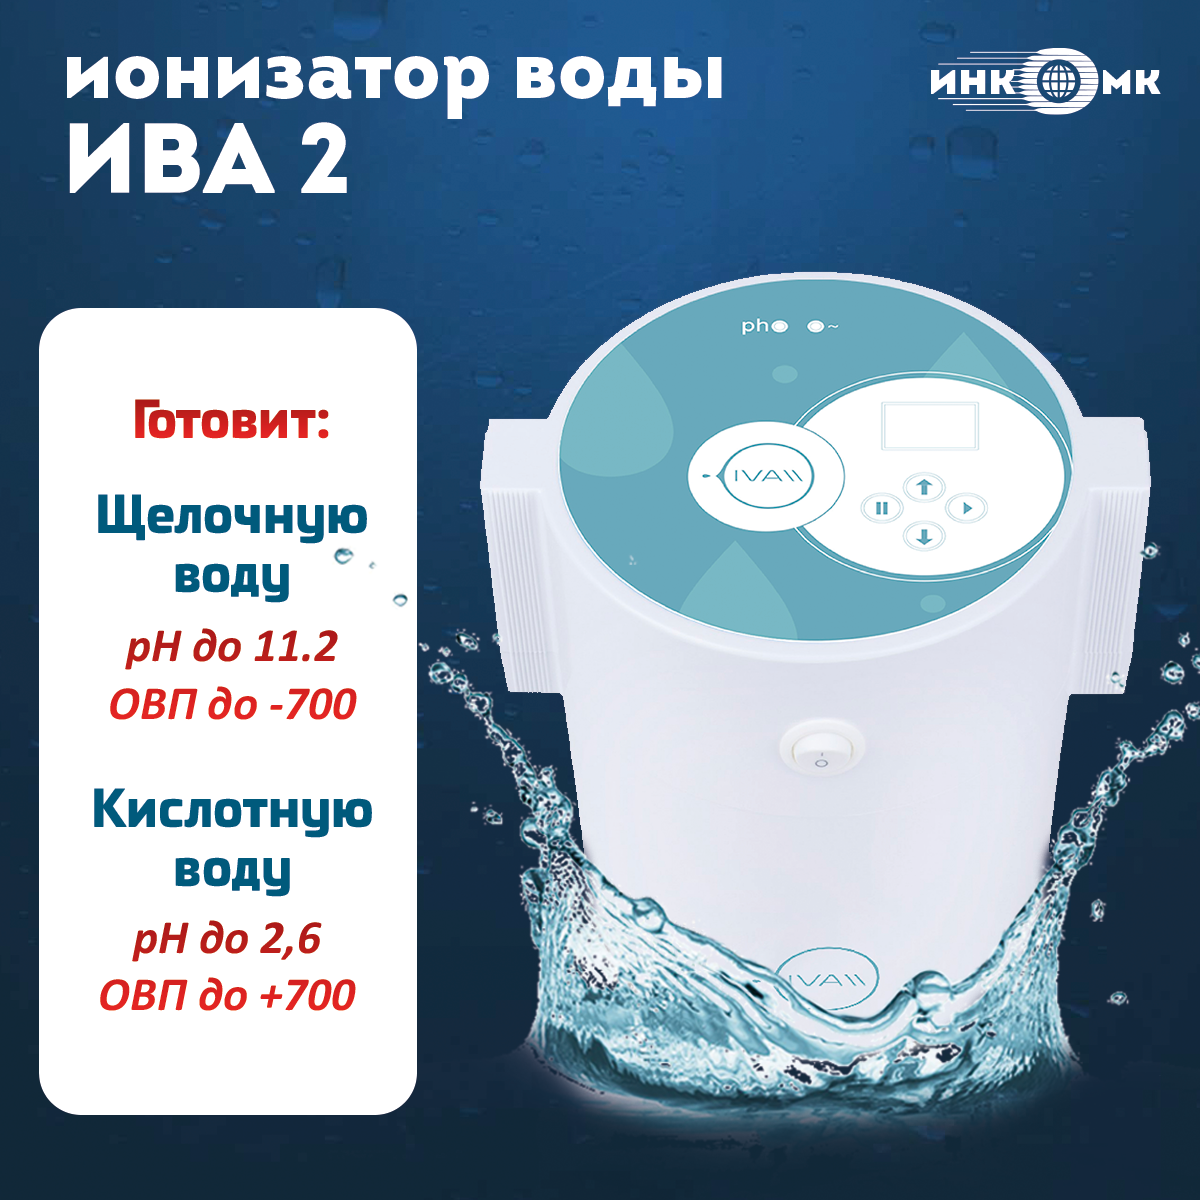 Инкомк ИВА 2 Активатор воды / ионизатор воды / Живая, мертвая вода